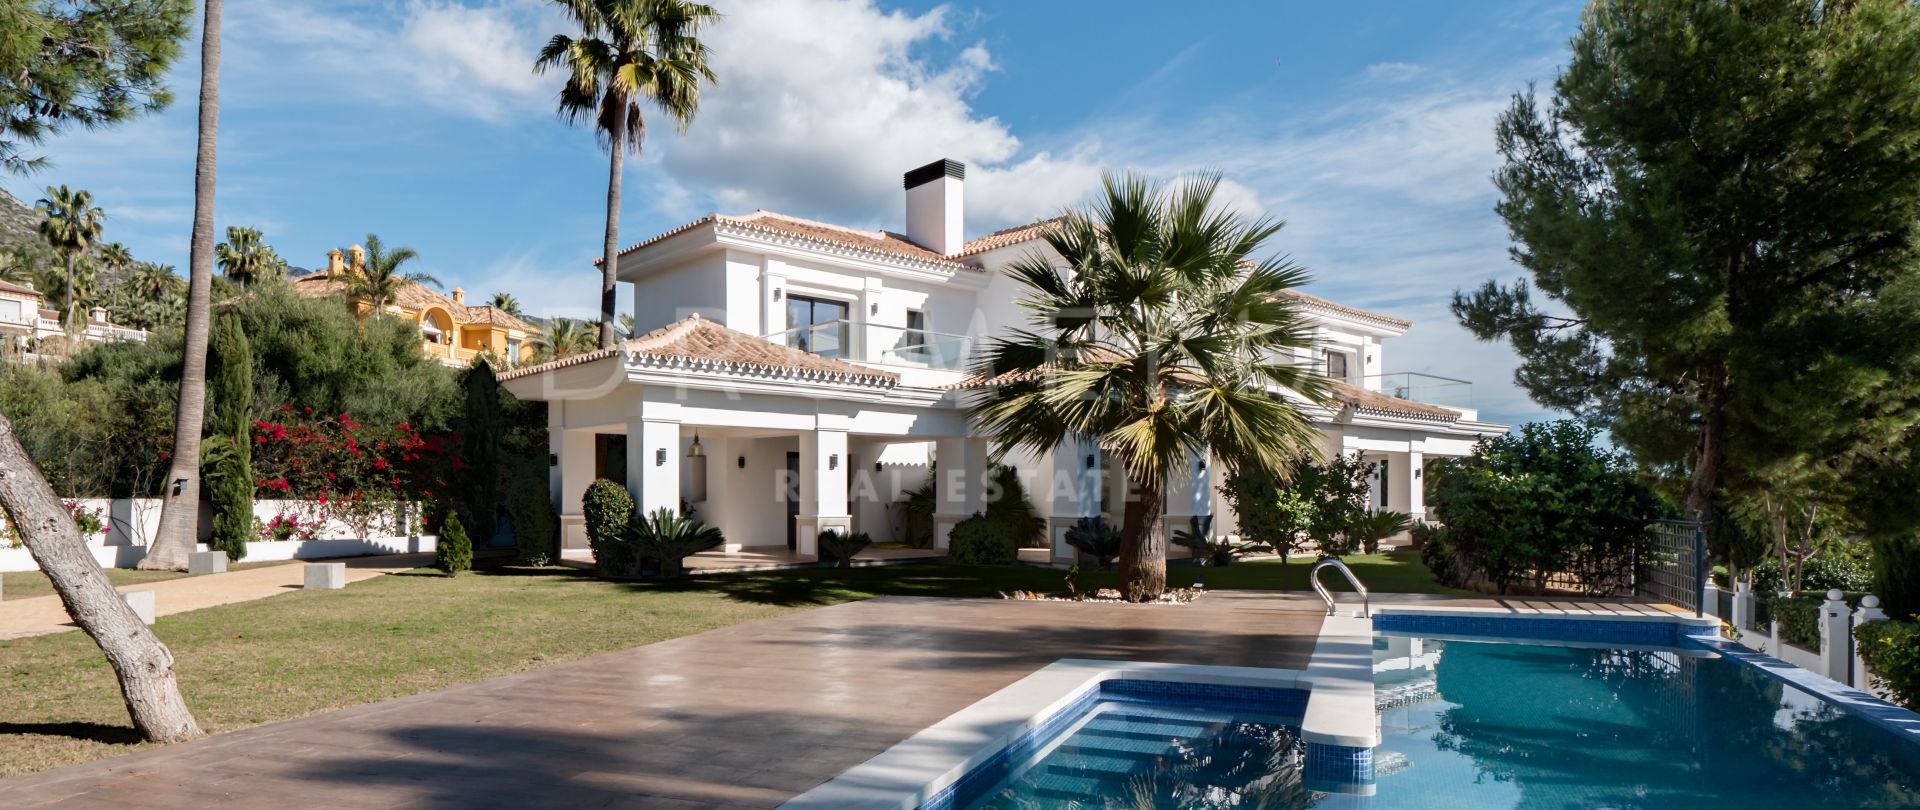 Nueva y moderna casa mediterránea de lujo con un aspecto exquisito, Sierra Blanca, Milla de Oro de Marbella